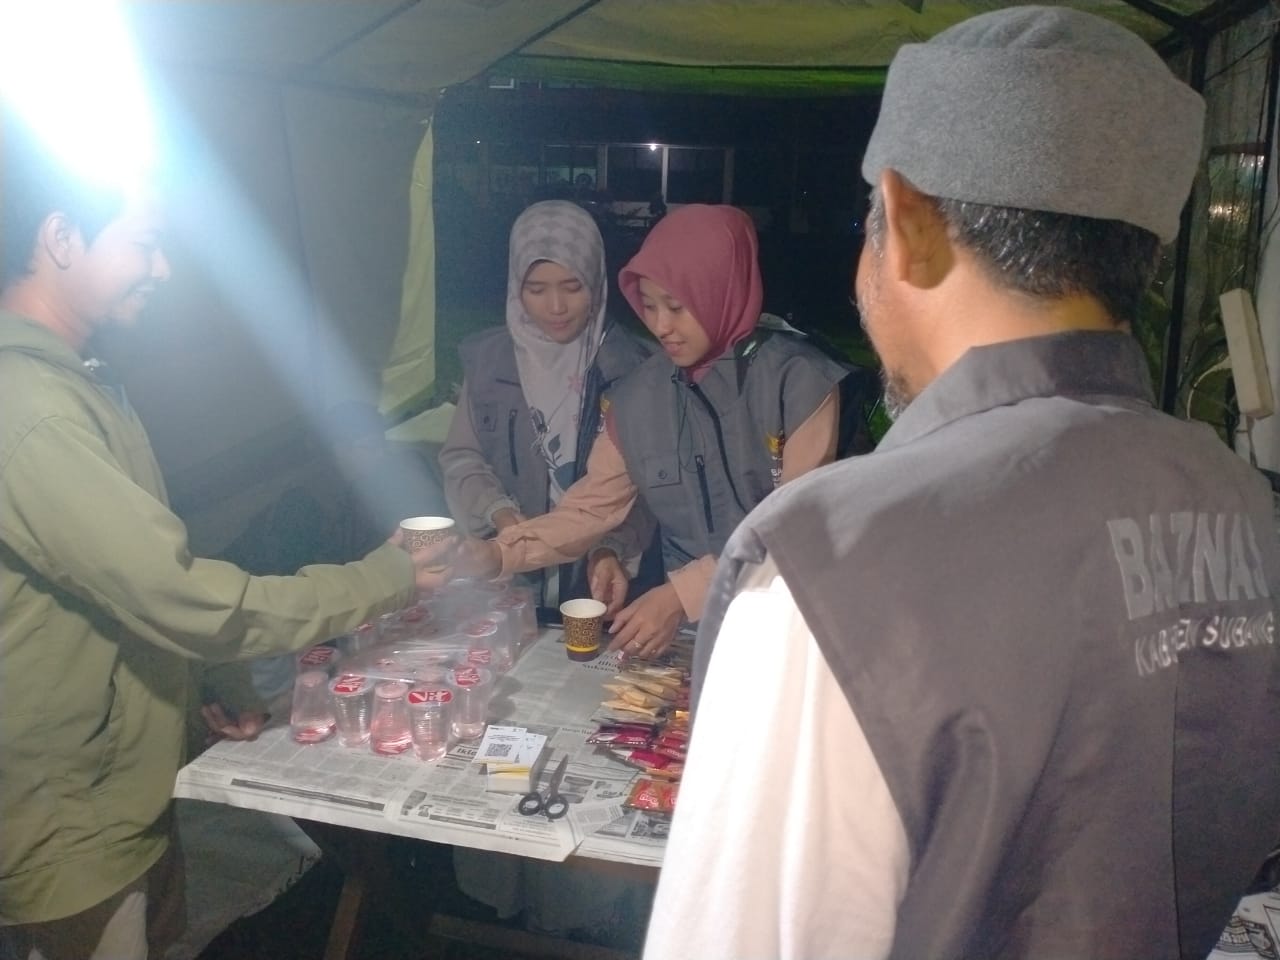 BAZNAS Subang Sediakan Ragam Minuman di Stand Khusus untuk Pengantar Calhaj di Islamic Center